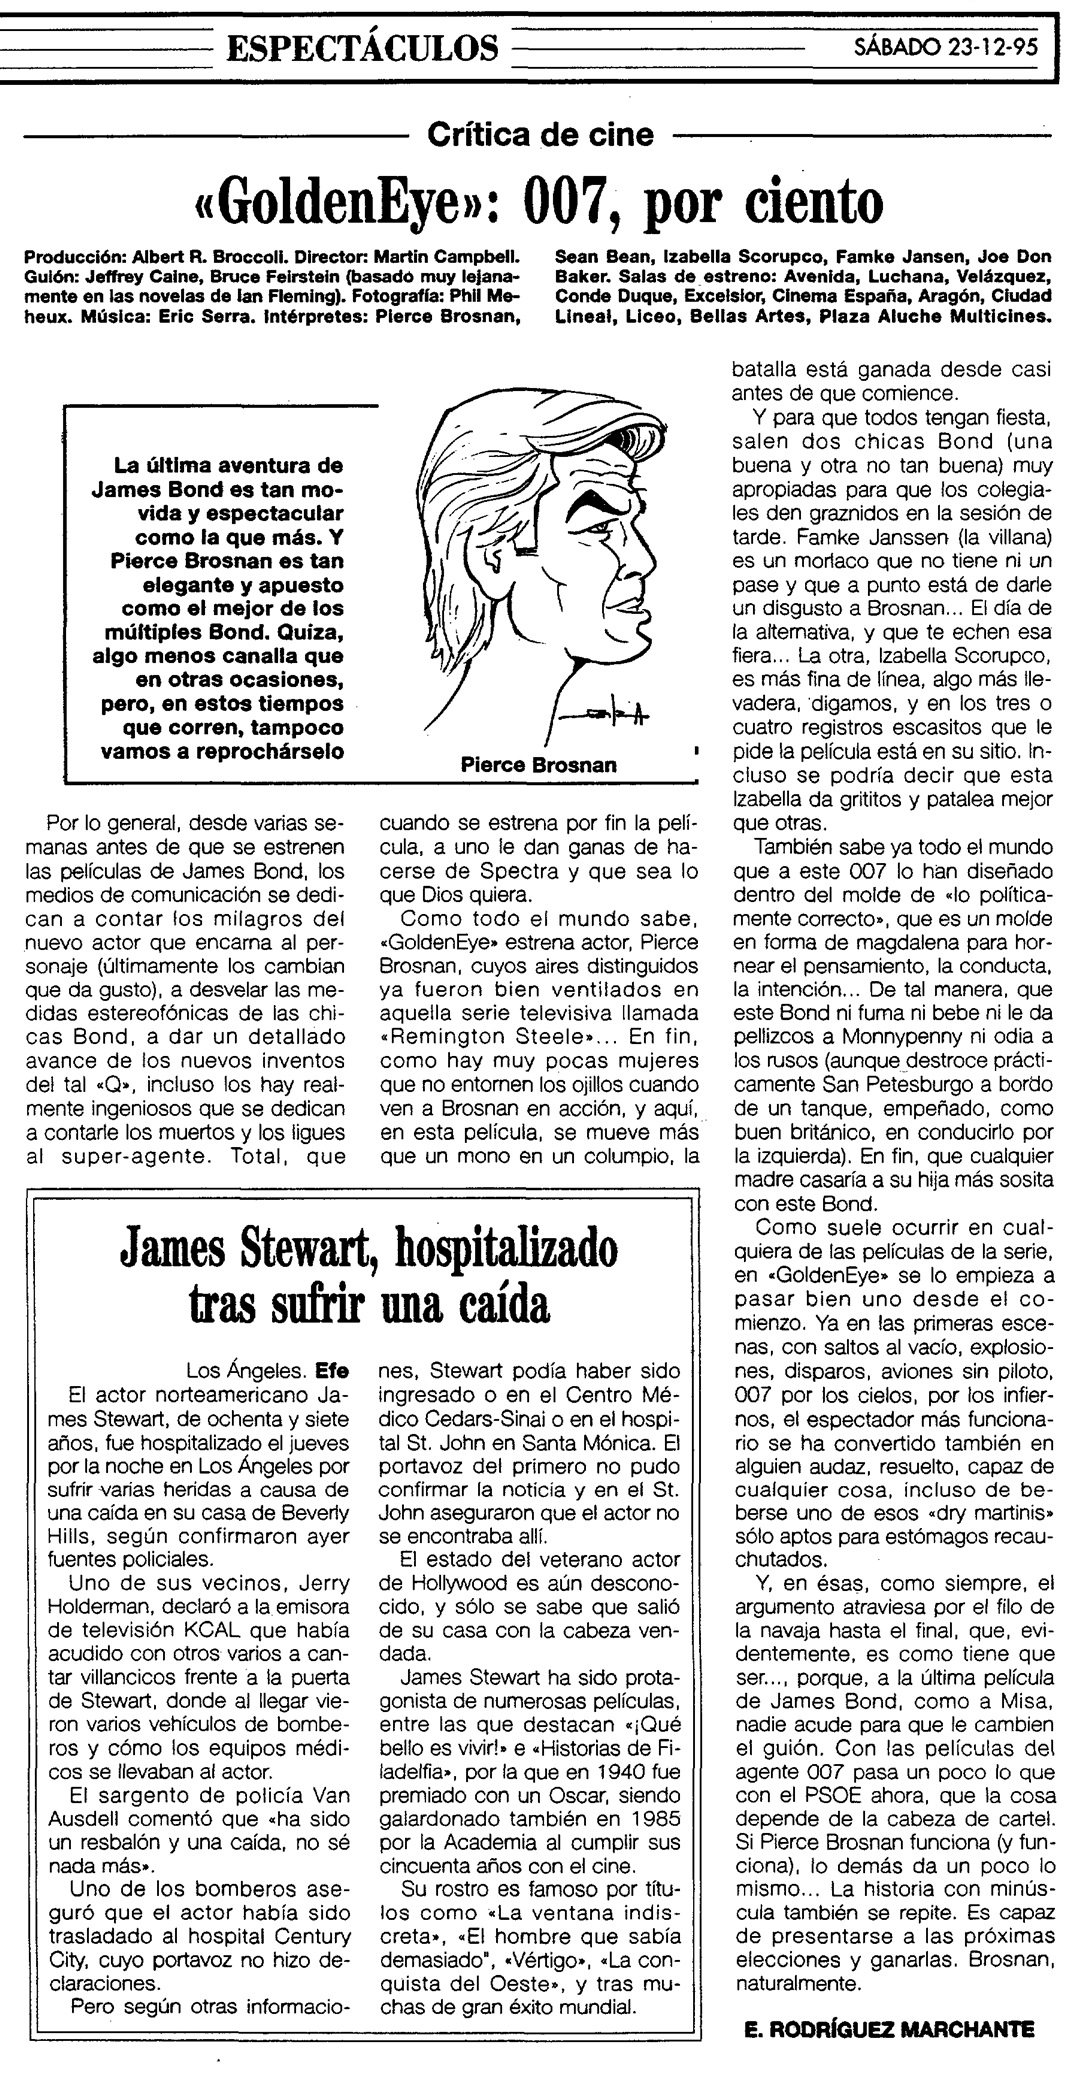 17 1995 12 23 ABC Madrid 110 Critica